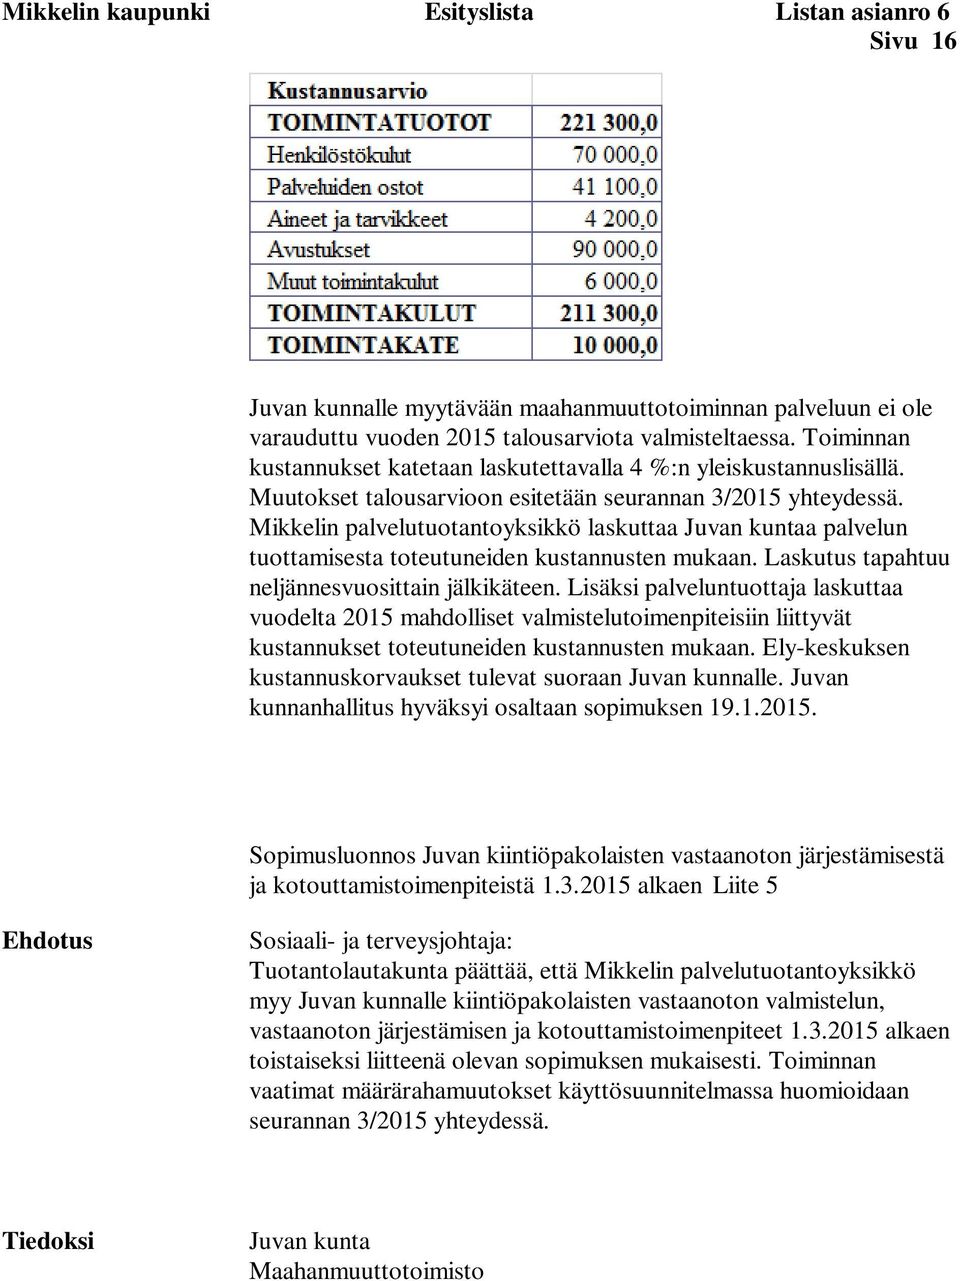 Mikkelin palvelutuotantoyksikkö laskuttaa Juvan kuntaa palvelun tuottamisesta toteutuneiden kustannusten mukaan. Laskutus tapahtuu neljännesvuosittain jälkikäteen.